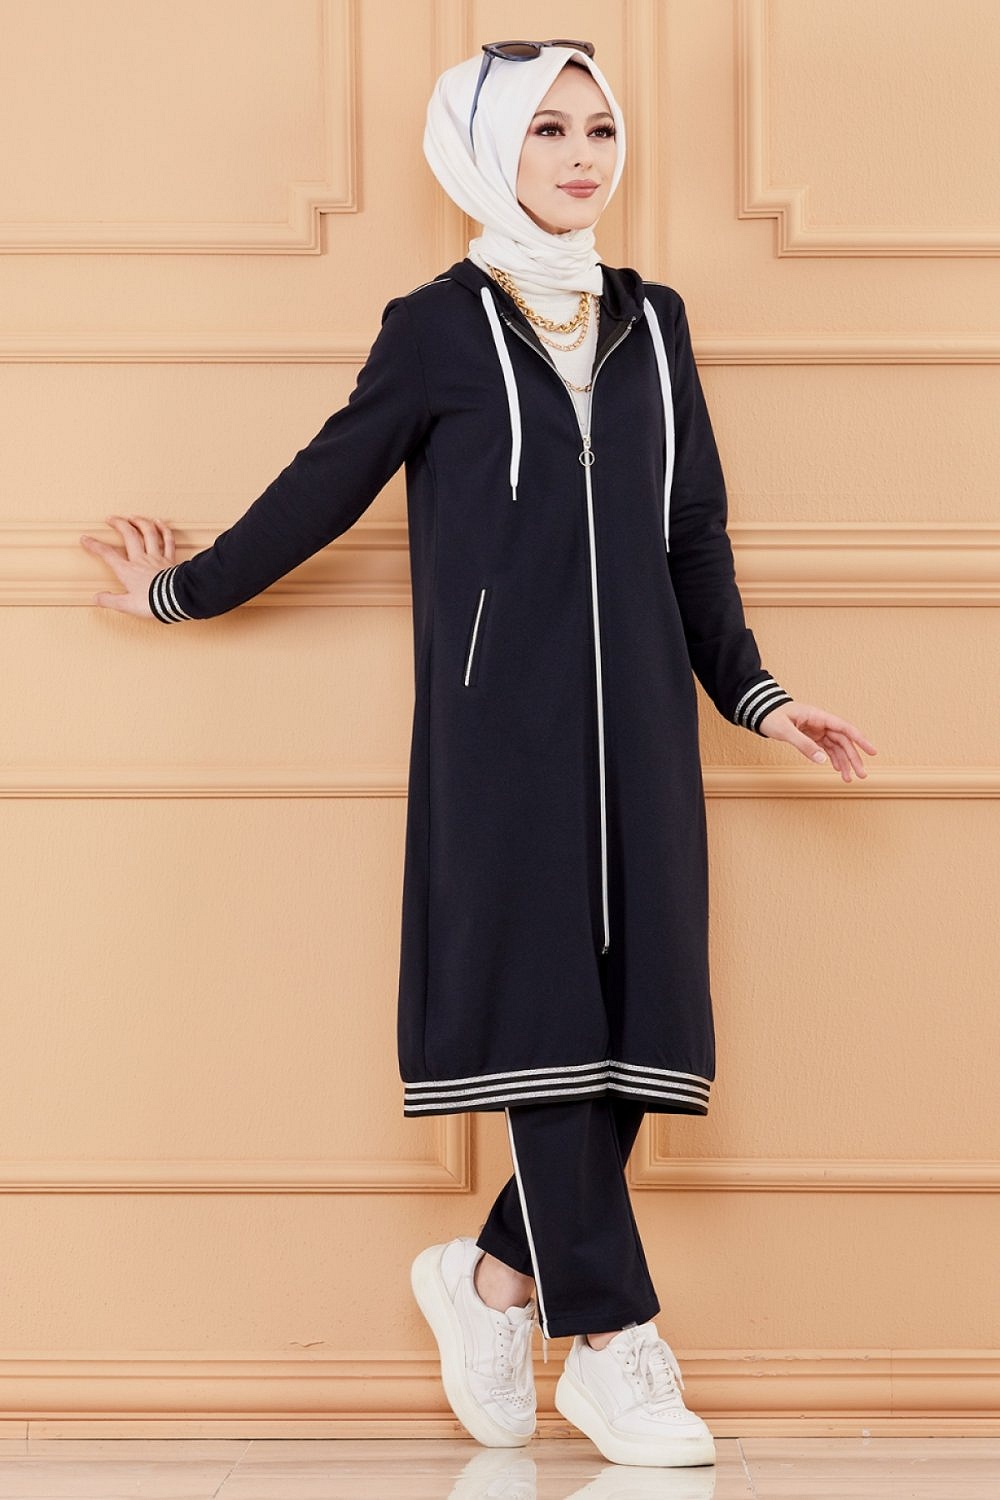 Veste moderne style décontracté avec fermeture zip (Vetement femme voilée)  - Couleur beige - Prêt à porter et accessoires